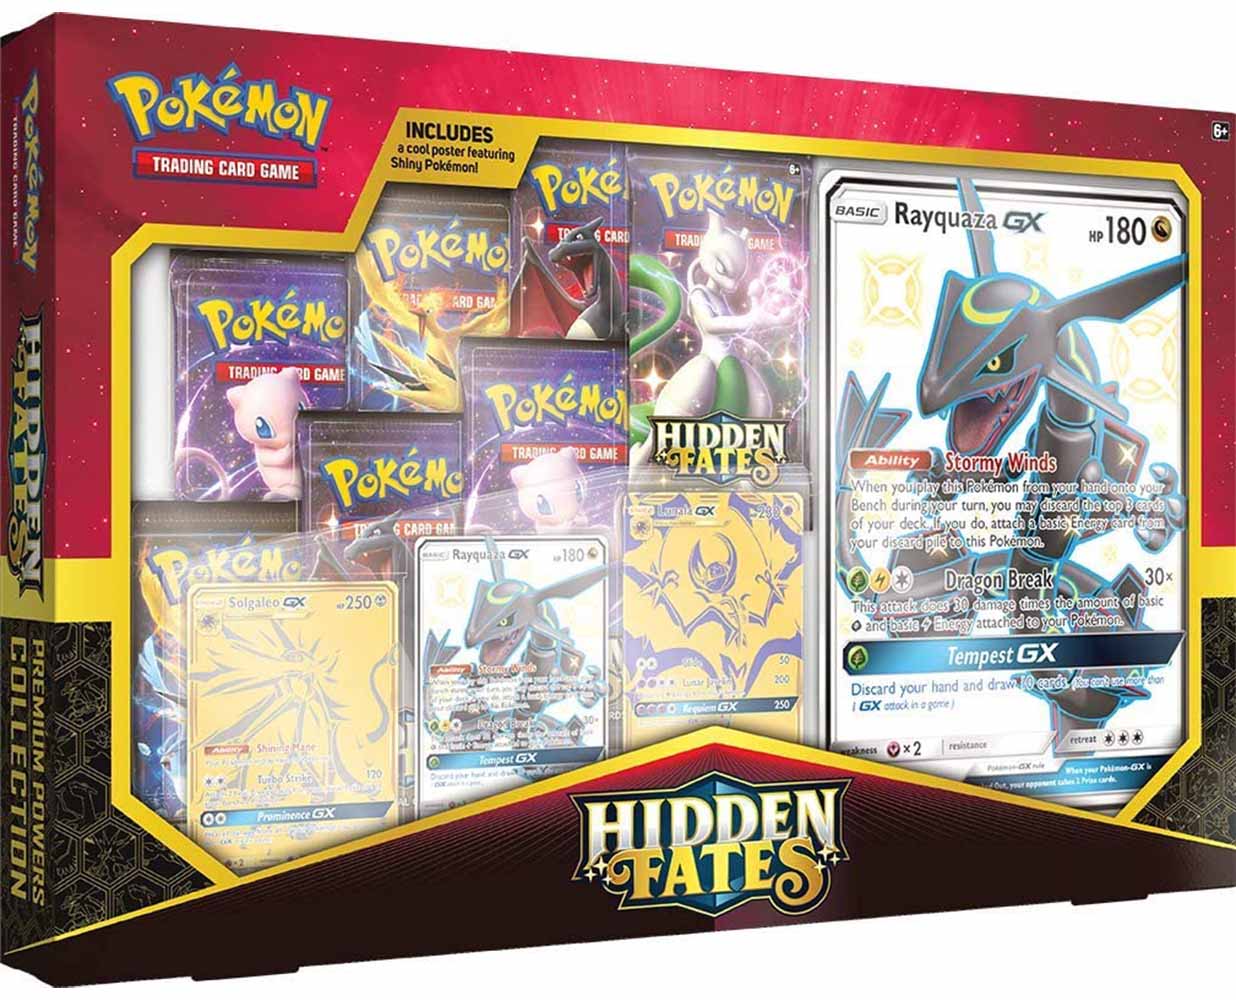 Pokémon Hidden Fates Premium Powers Collection